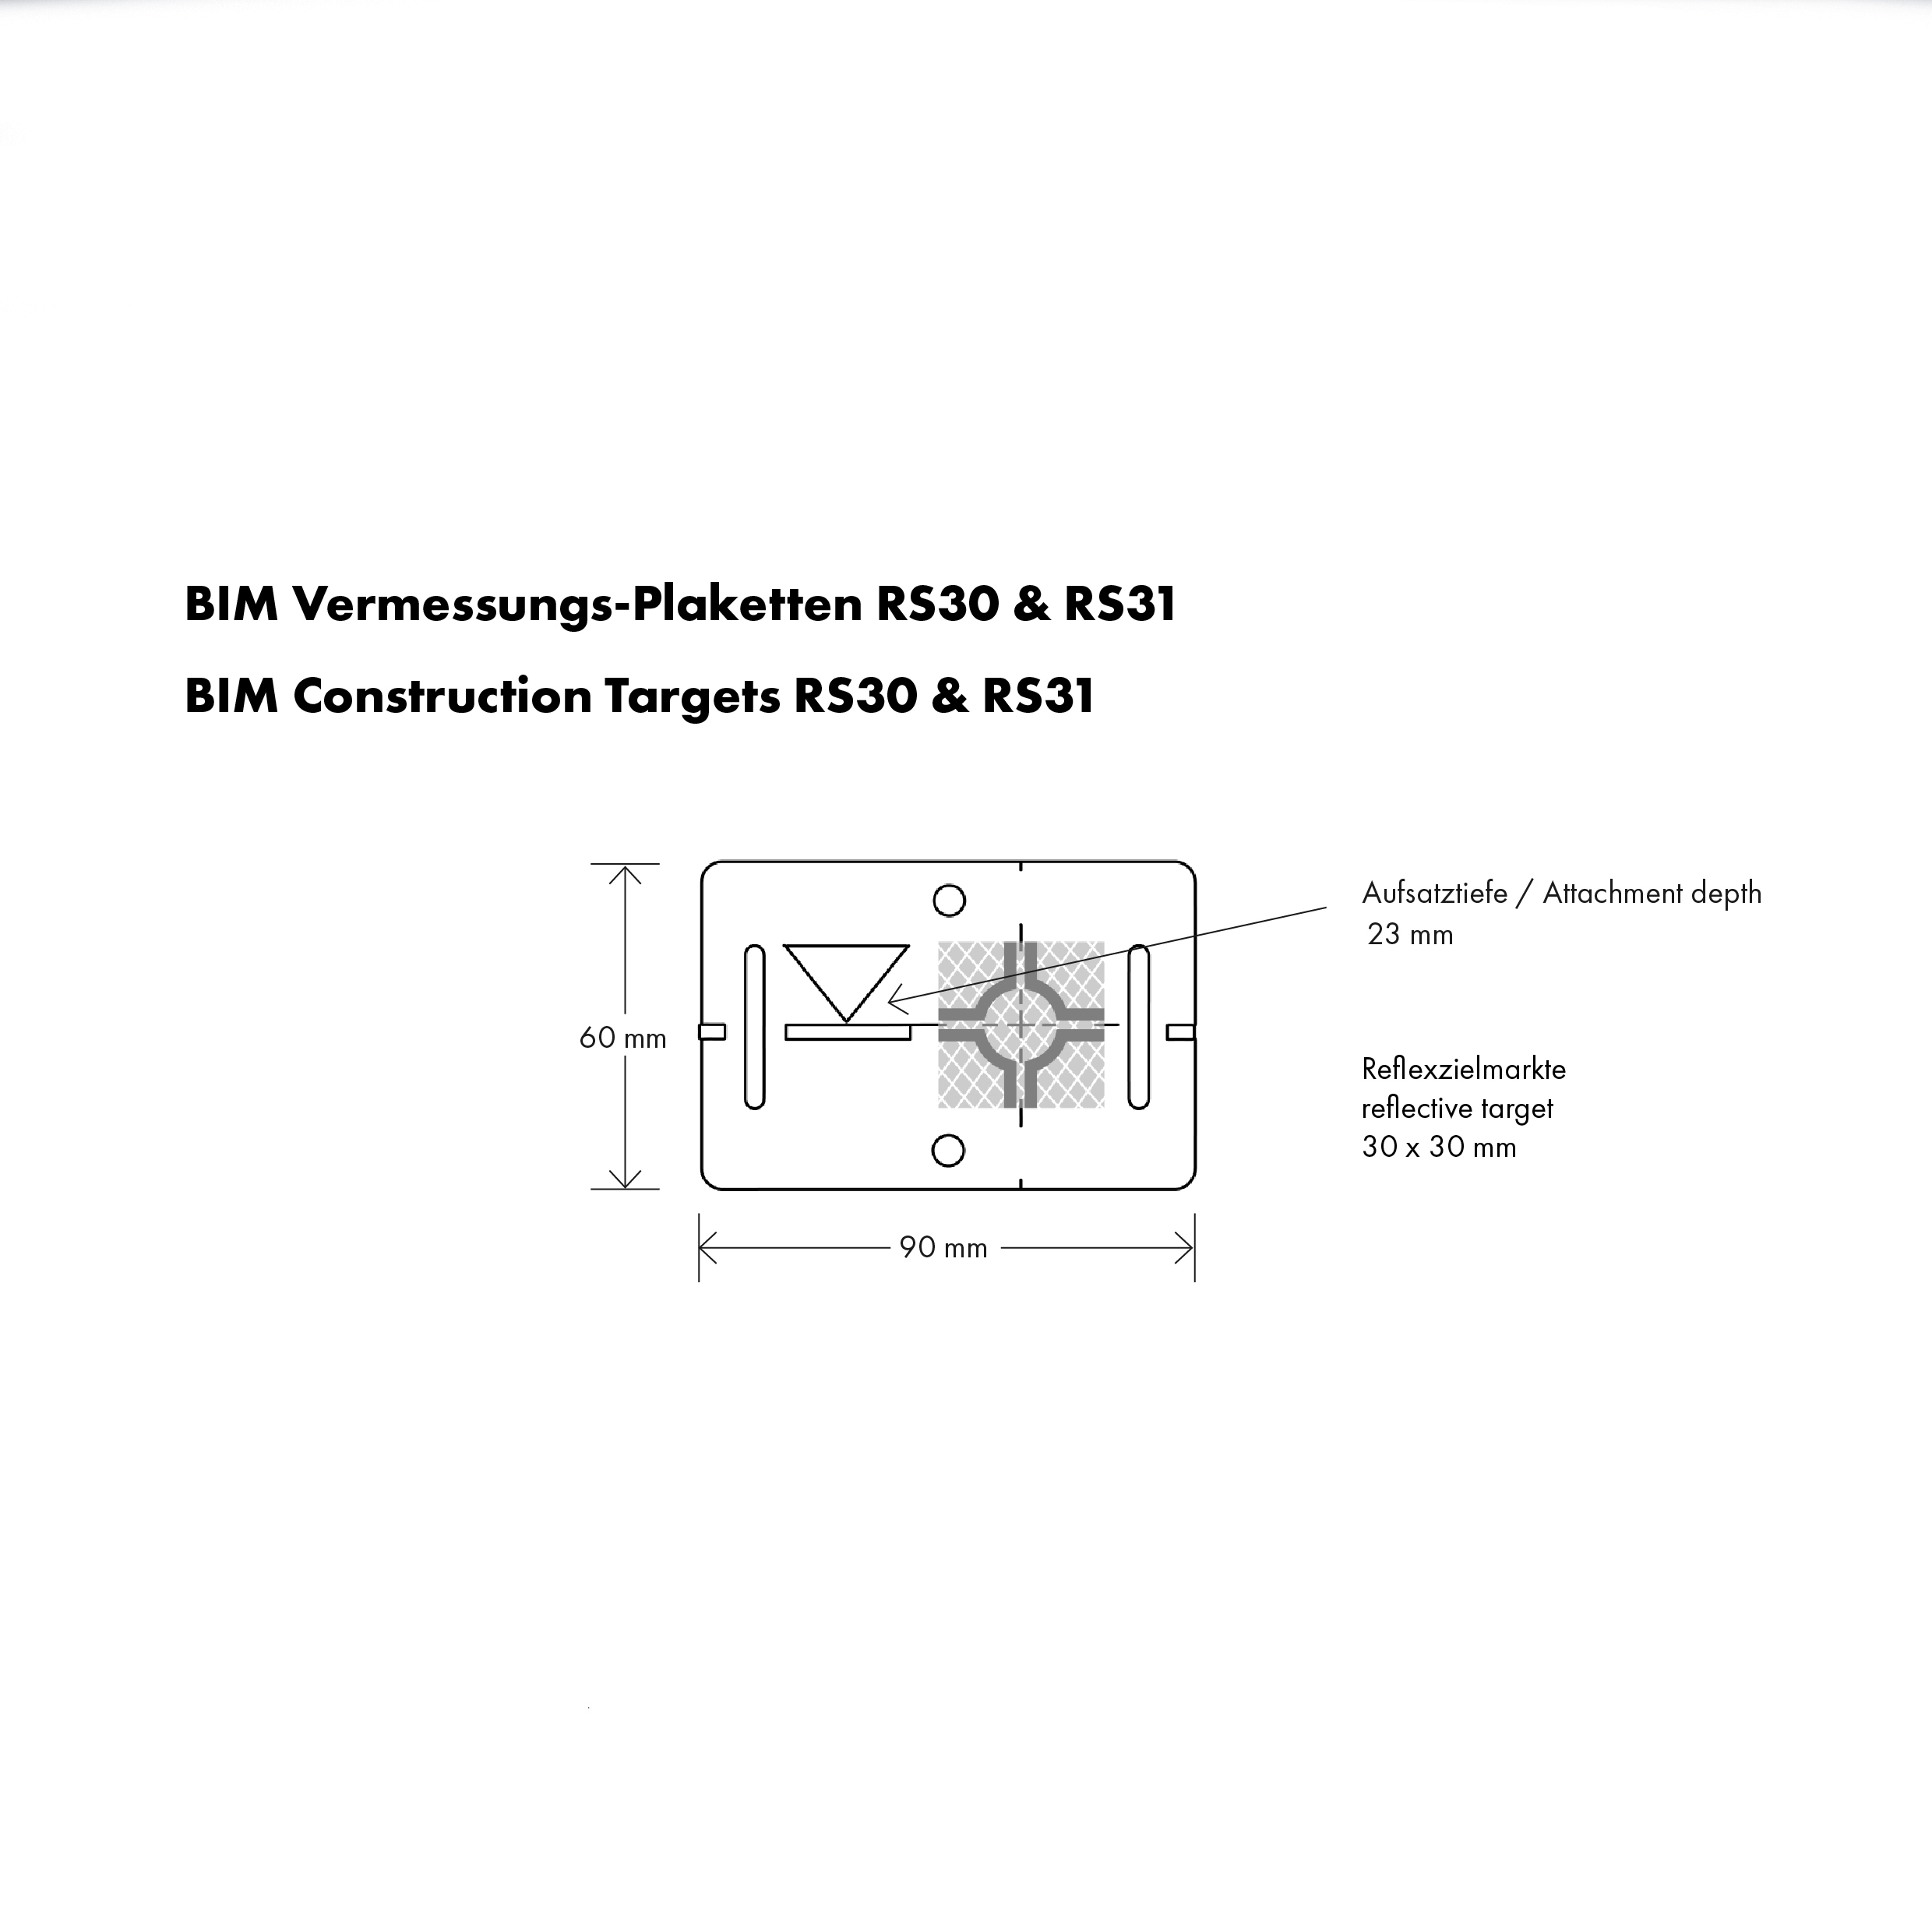 BIM Vermessungs-Plaketten RS30 mit reflektierender Zielmarke